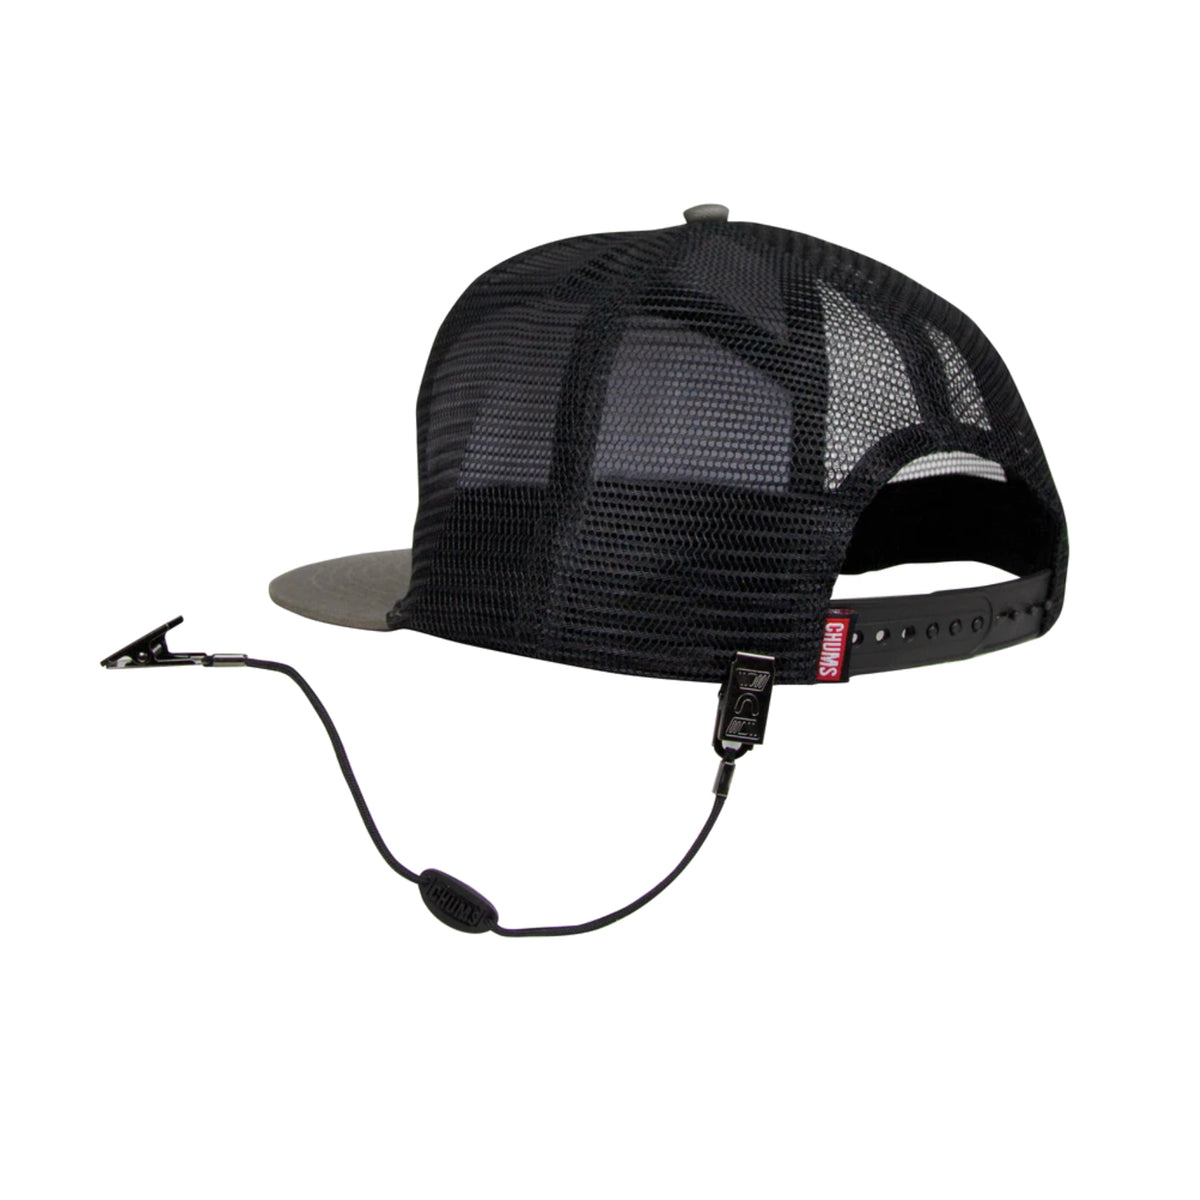 chums cap retainer on hat 